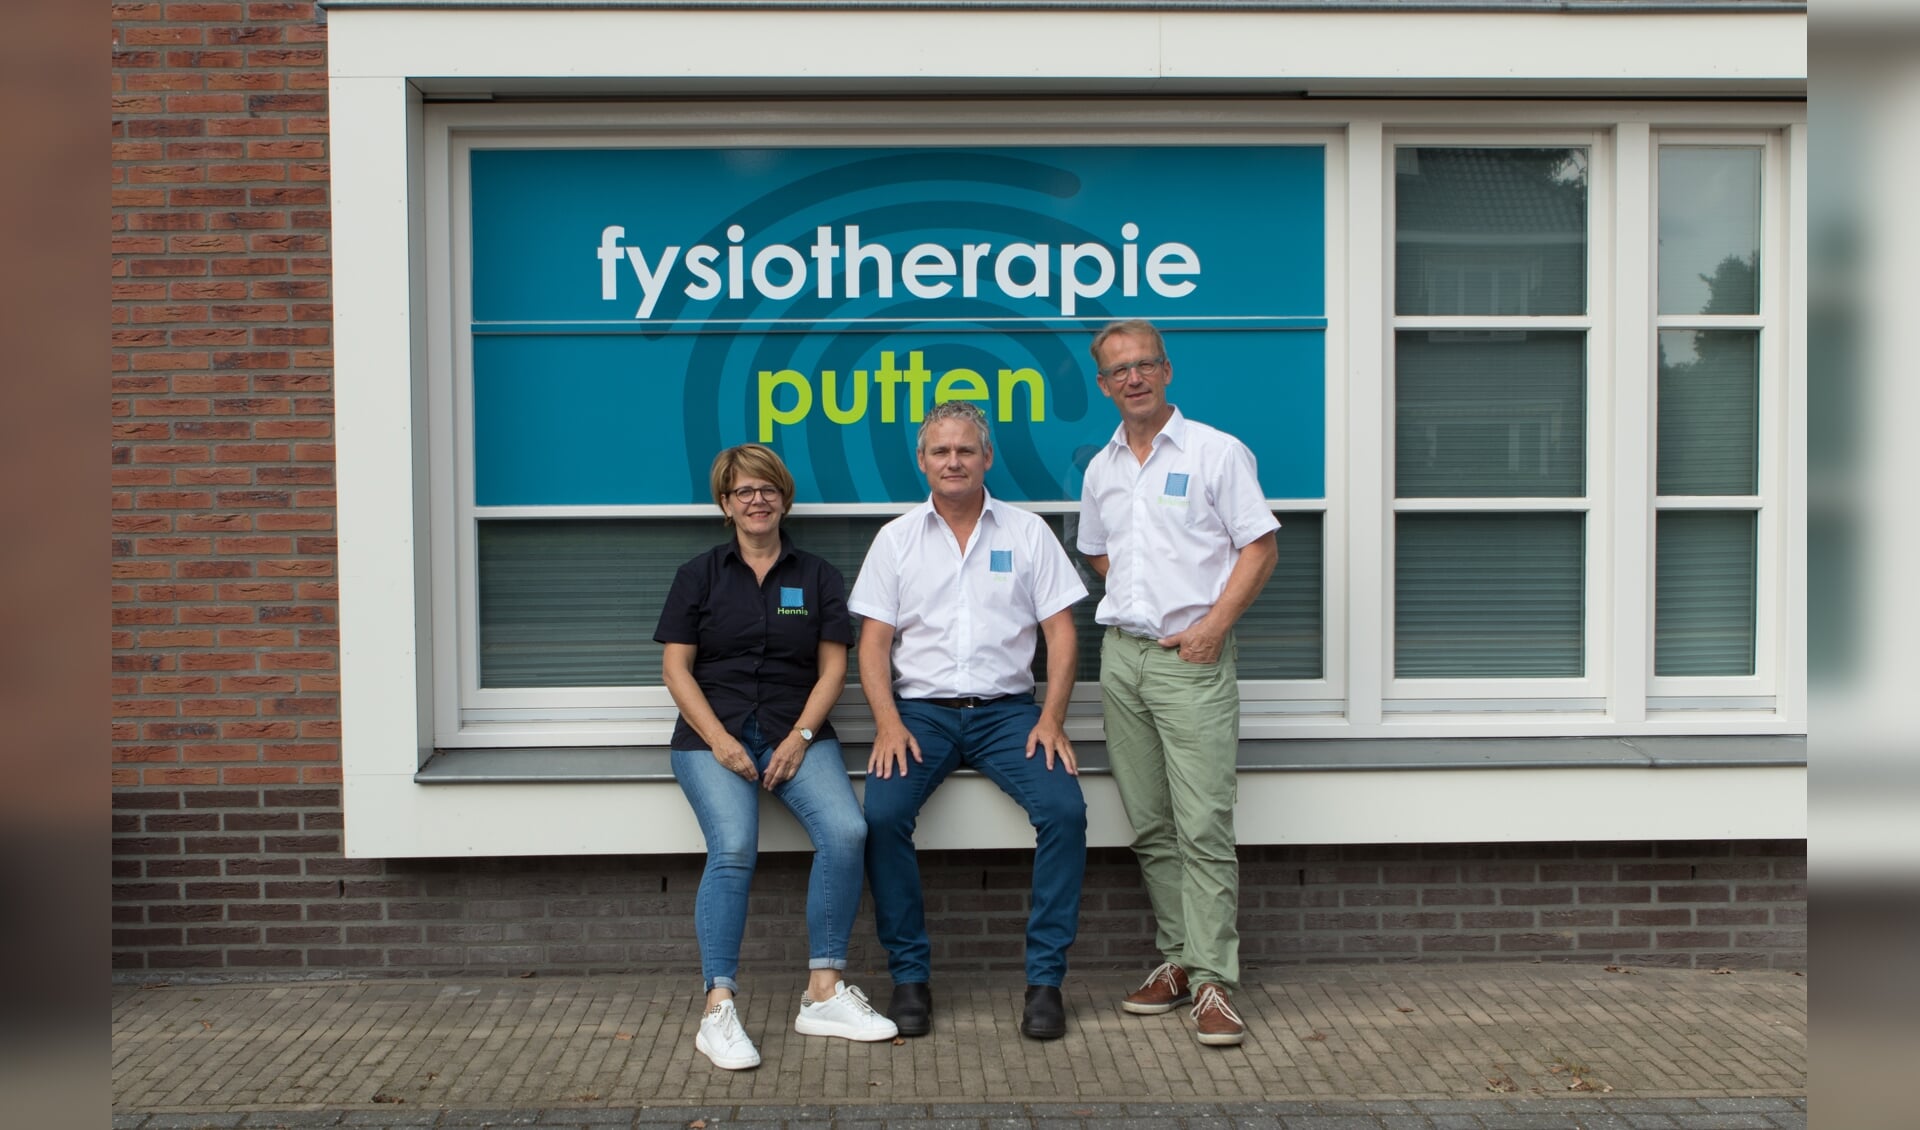 Fysiotherapie Putten, Harderwijkerstraat 3A, Putten | www.fysiotherapieputten.nl | 0341-352358 